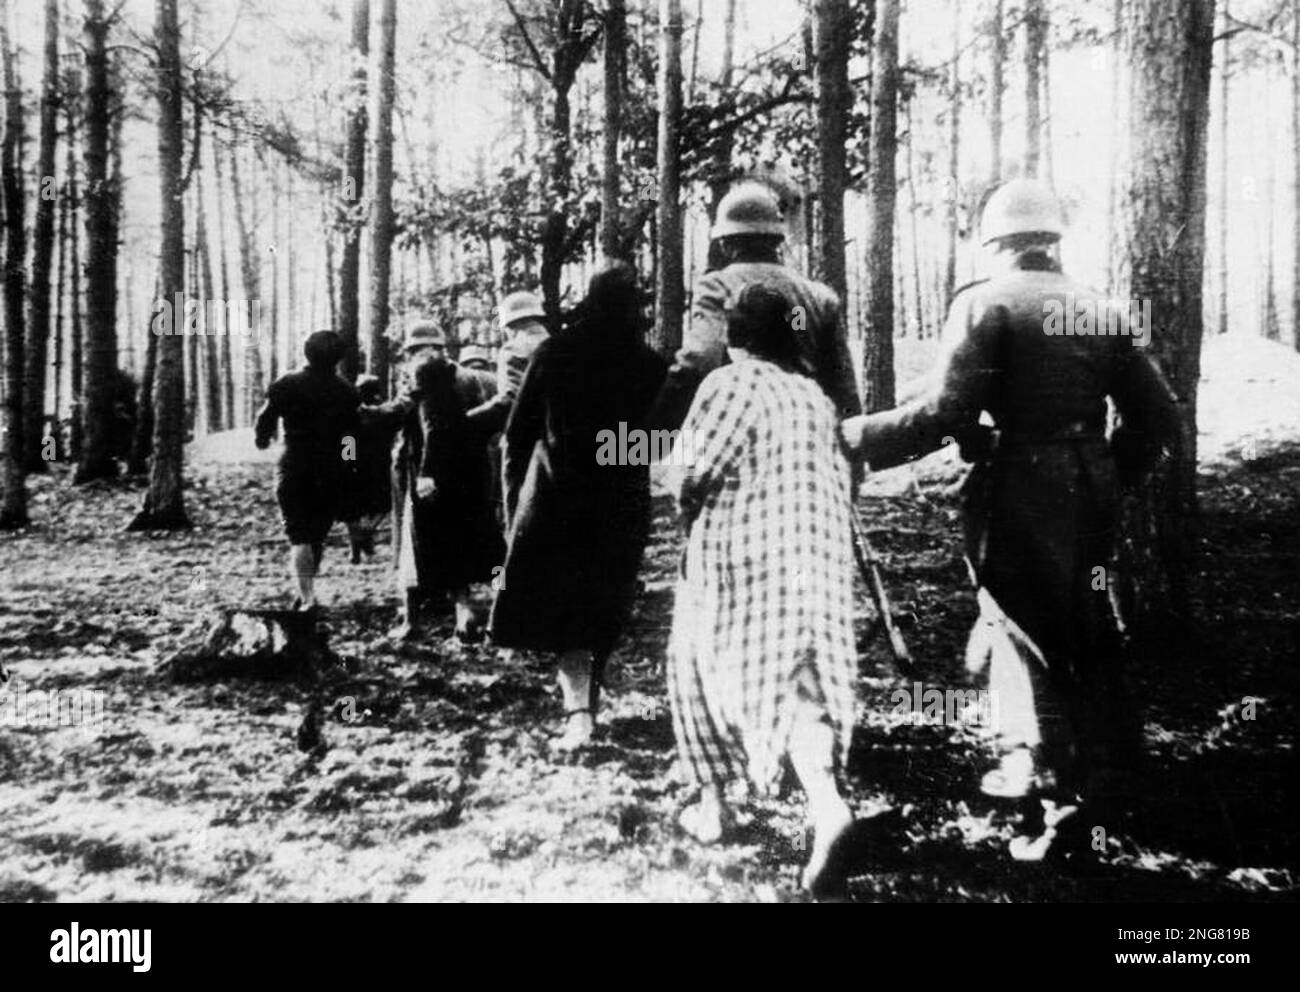 La première phase de l'Holocauste n'était pas avec des chambres à gaz mais des escadrons mobiles d'exécution connus sous le nom d'Enisatzgruppen. Leur tâche était de se promener derrière les lignes de front de teh, en tirant tous les Juifs qu'ils pouvaient. Ils ont tué environ deux millions de personnes. Cette photo montre les femmes polonaises ont mené à l'exécution de masse dans une forêt près du village de Palmiry. Après la guerre, la femme au premier plan a été identifiée comme Janina Skalska. Banque D'Images